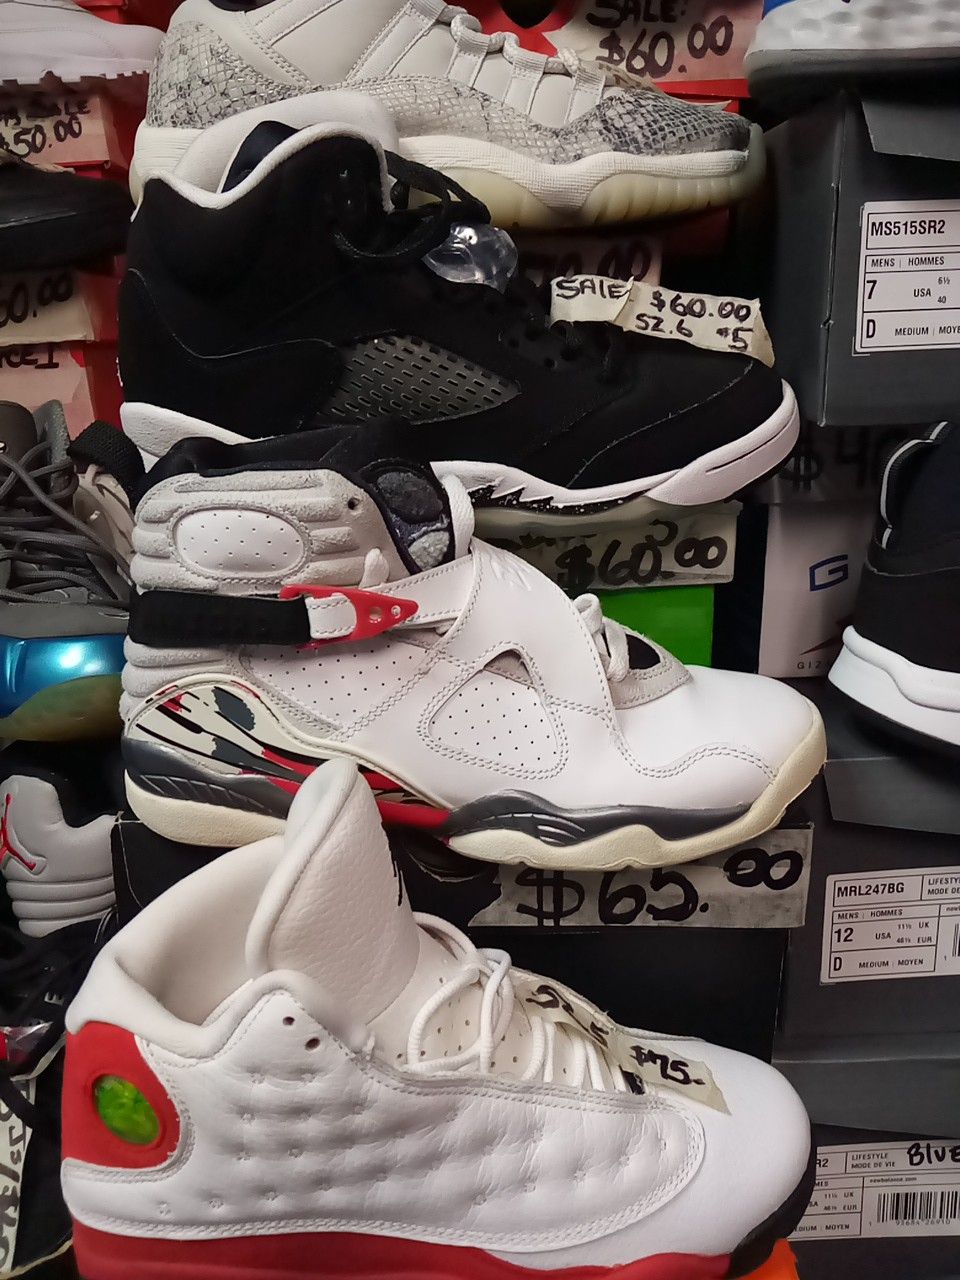 Jordans Black Friday sale